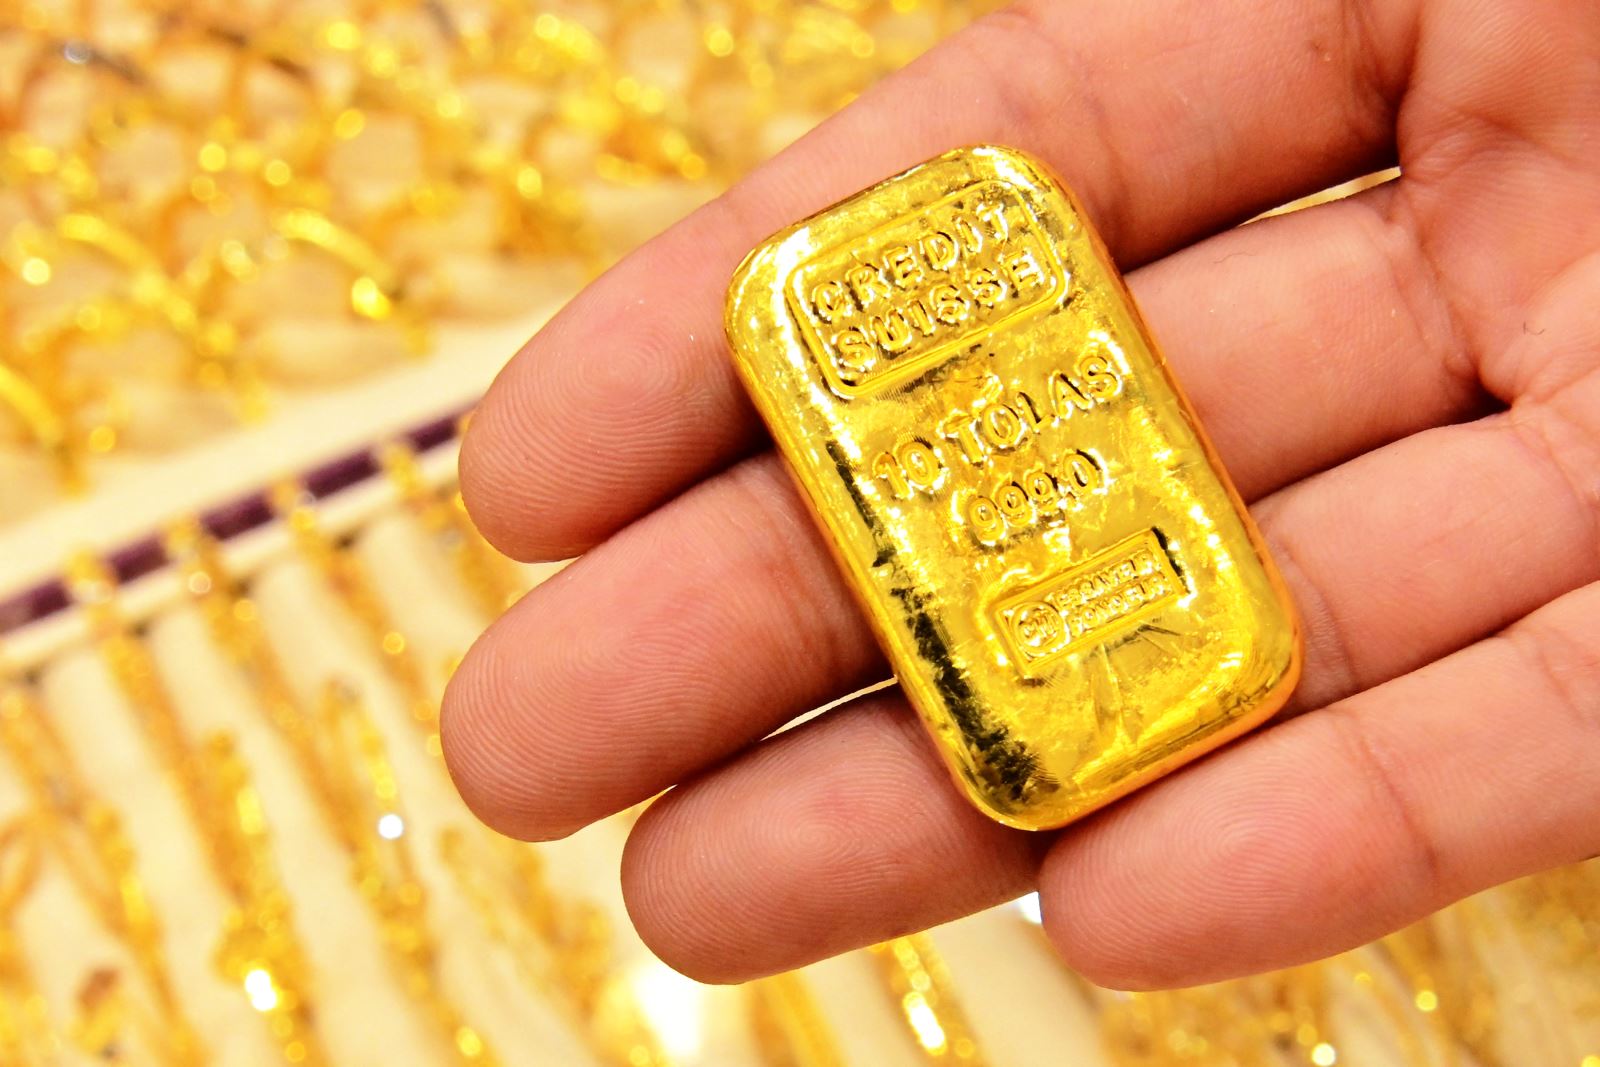 Vàng châu Á, giá vàng châu Á, Vàng châu Á đi xuống, Giá vàng châu Á đi xuống, thị trường vàng châu Á, đồng USD tăng, thị trường vàng châu Á đi xuống